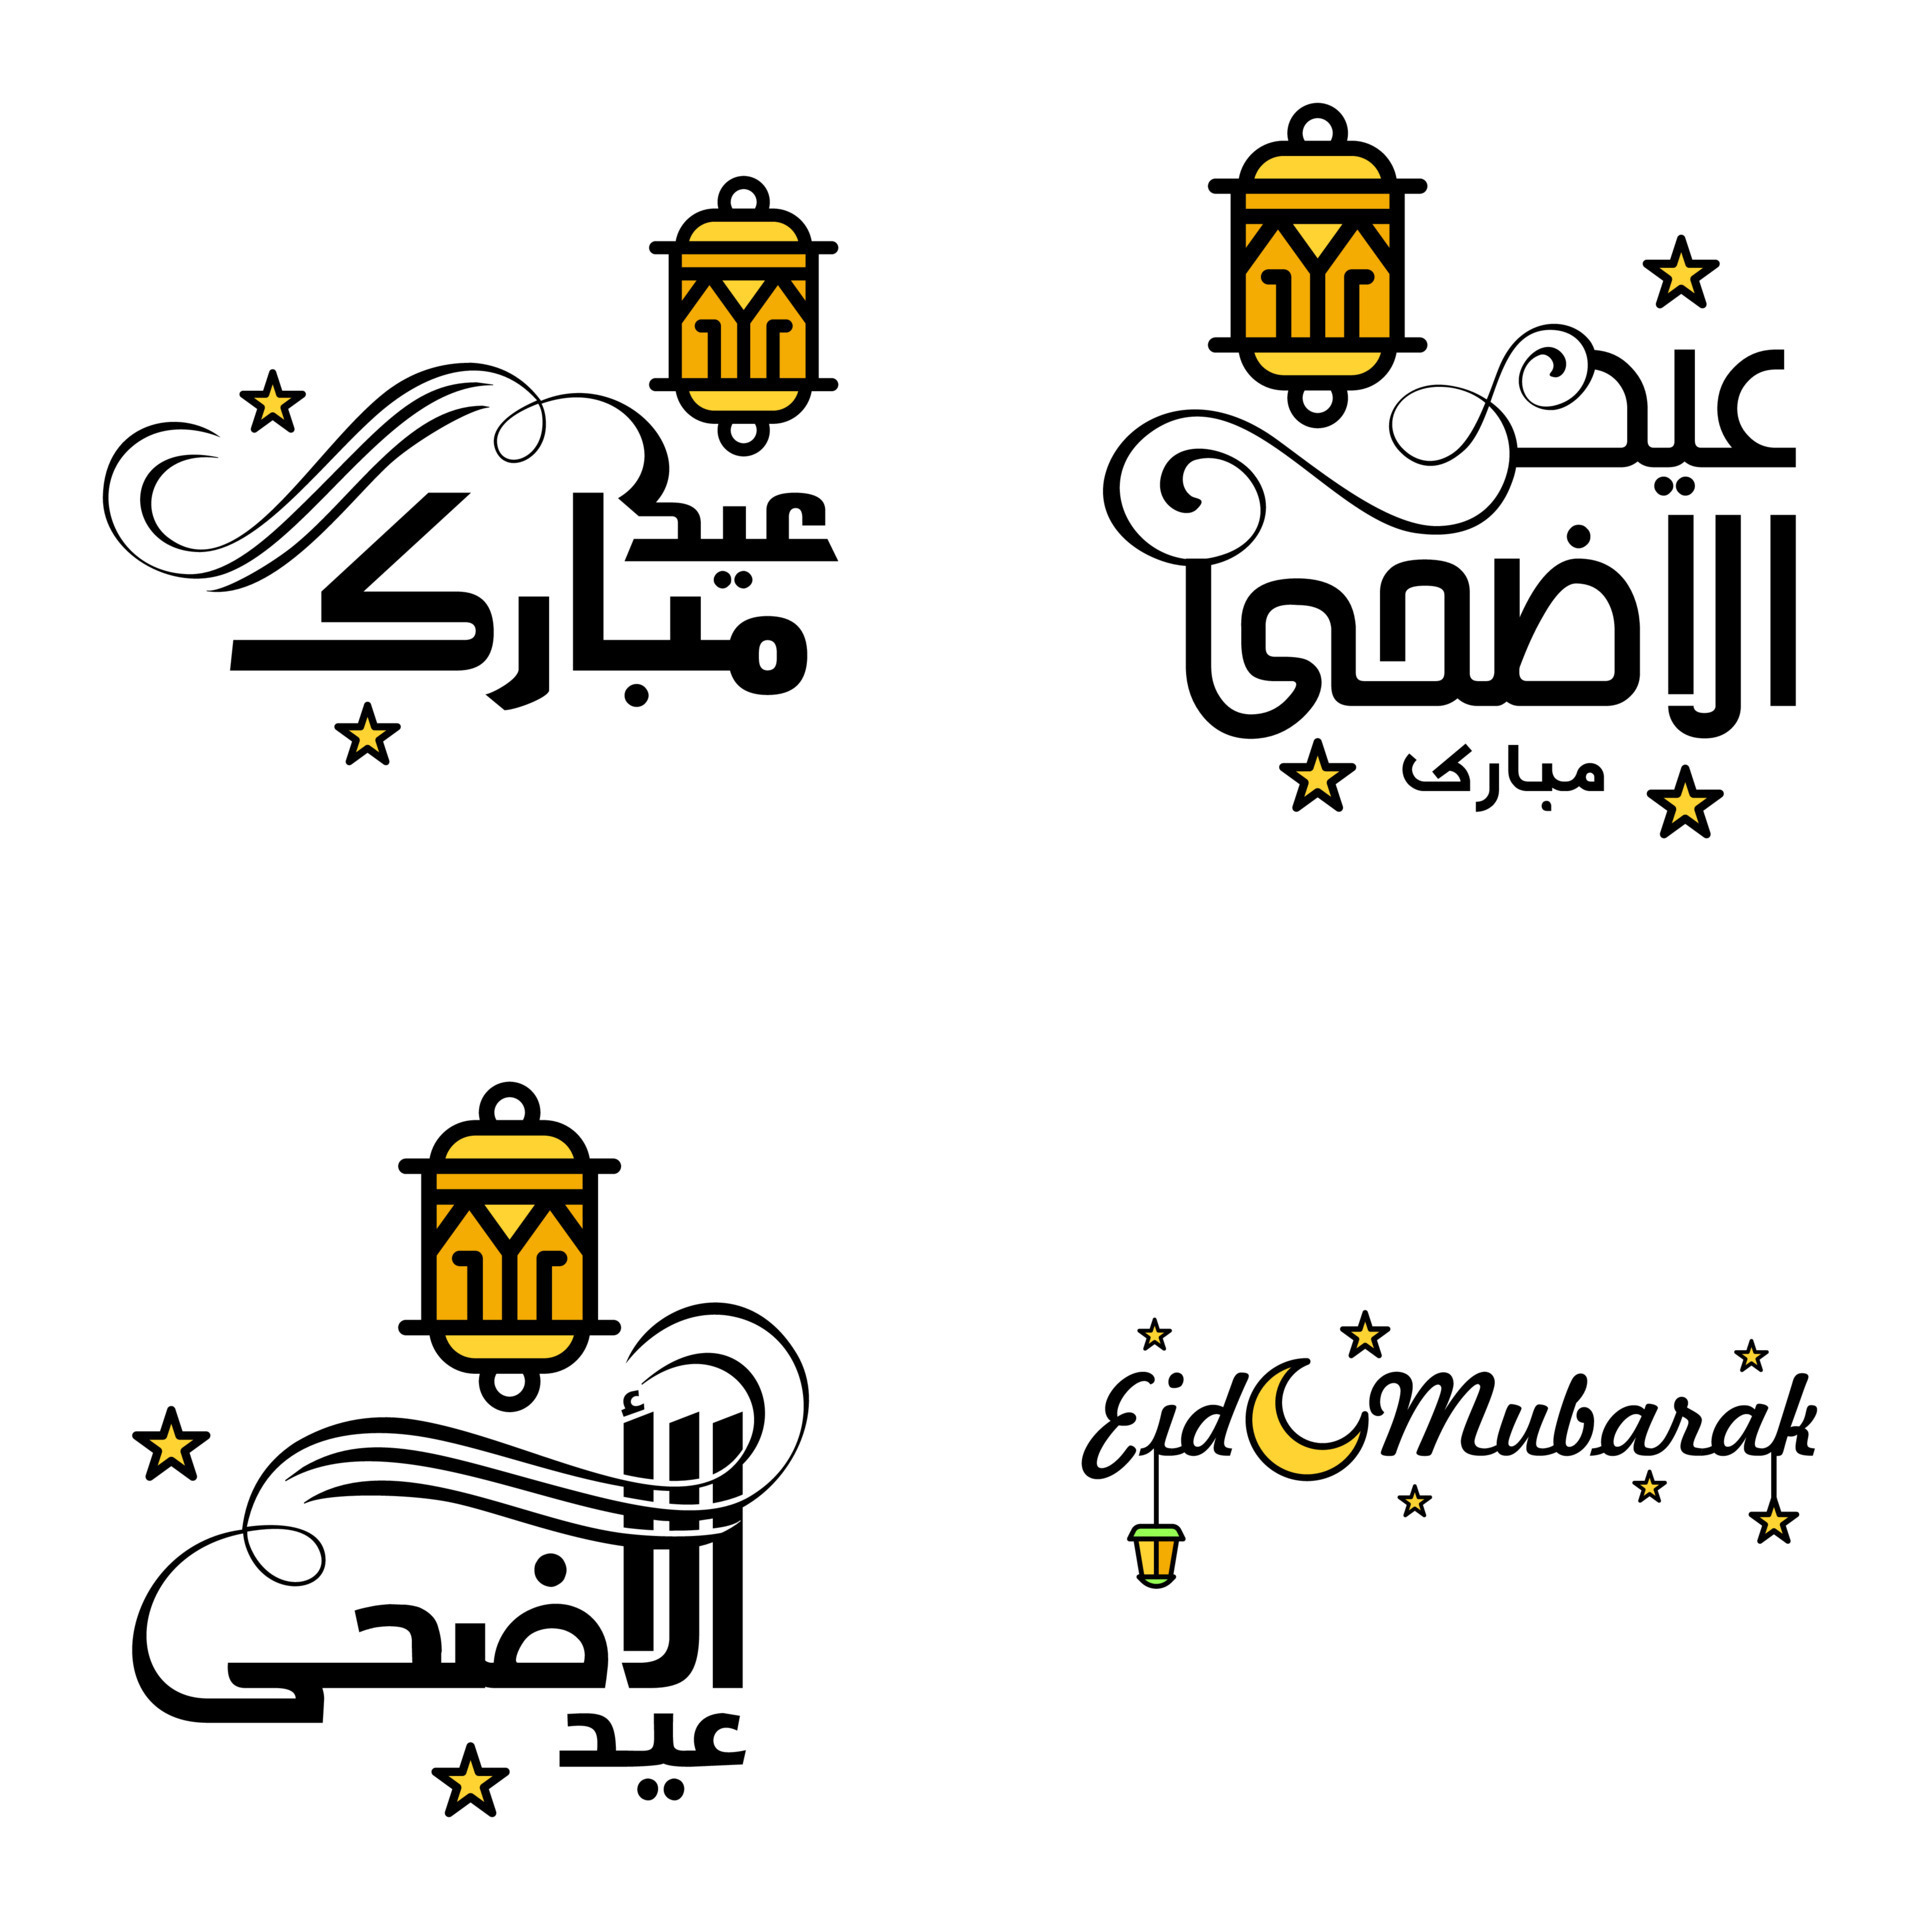 Cartão de felicitações eid mubarak com a caligrafia árabe